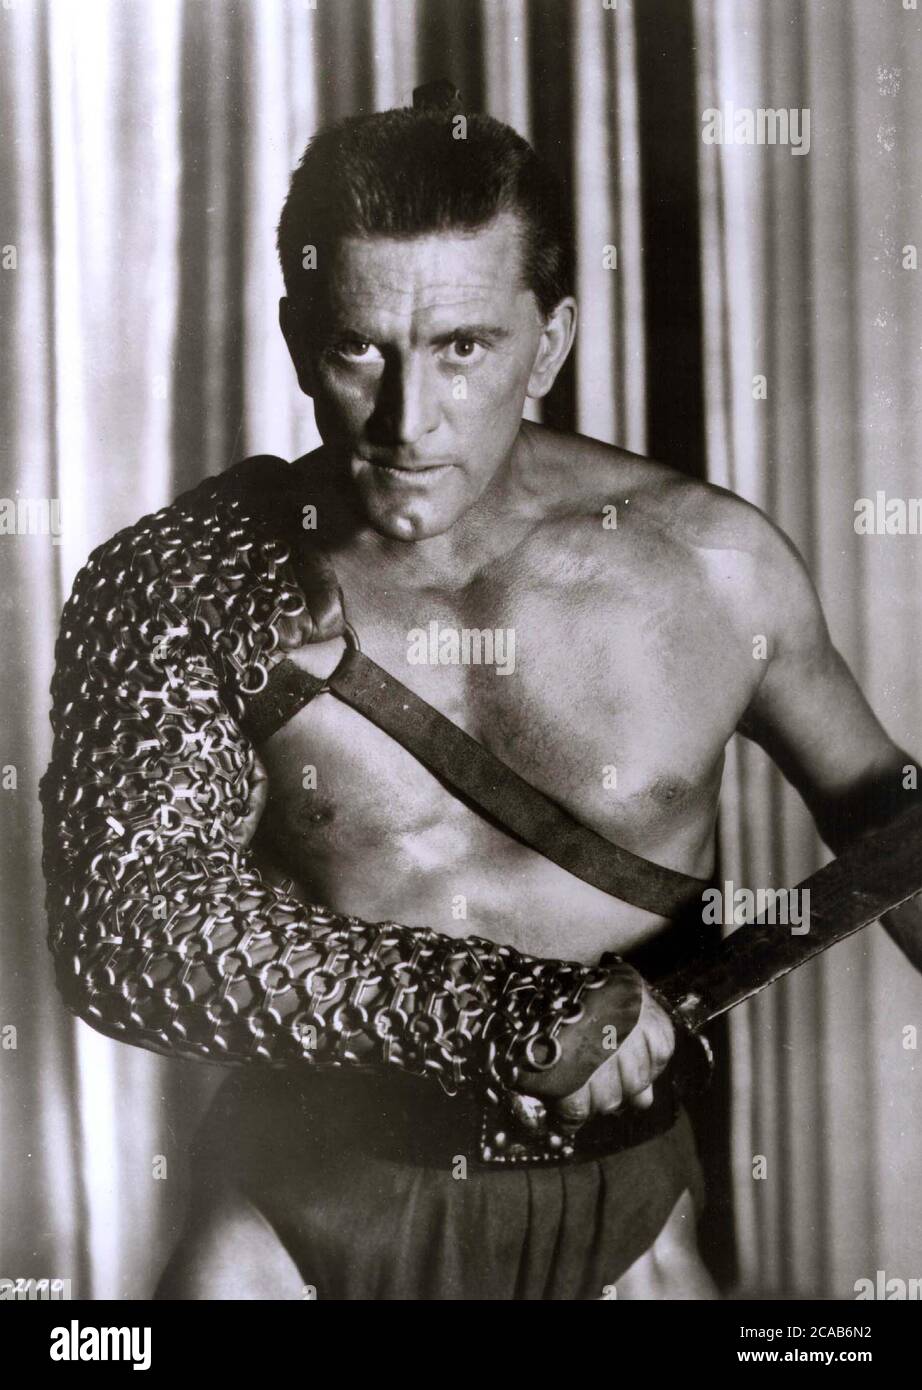 Filmstill des US-Schauspielers Kirk Douglas im Hollywood-Film 'Spartacus' von 1960. Douglas wurde 1918 geboren Stockfoto